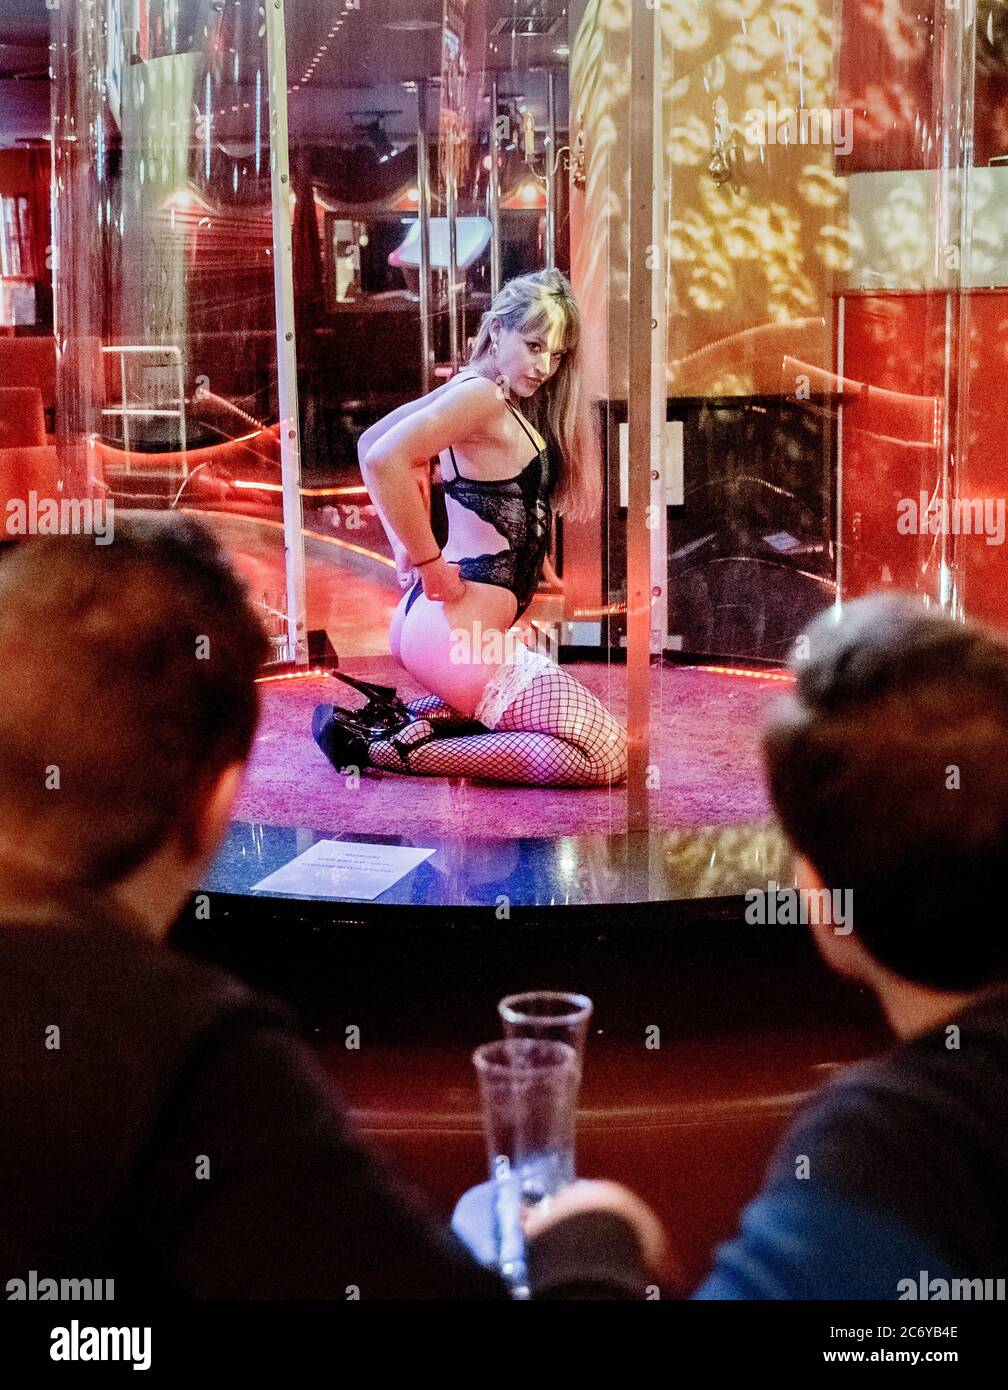 Hamburgo, Alemania. 11 de julio de 2020. Una bailarina baila en 'Susi's  Show Bar' en un tubo de plexiglás, que se supone que protege a ella y a los  invitados contra el